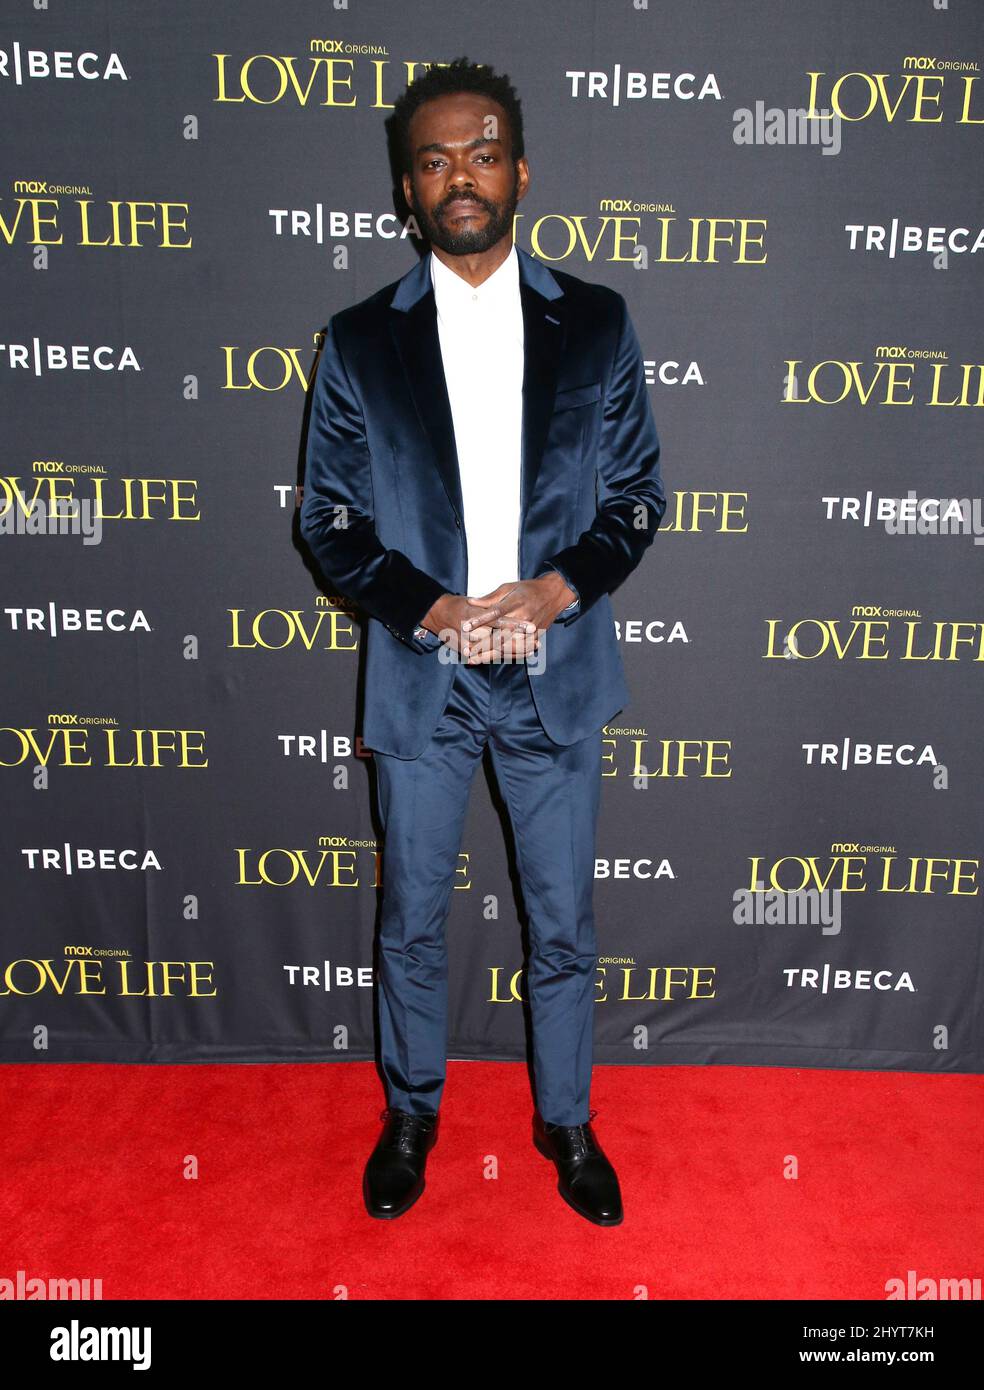 William Jackson Harper assiste à la Tribeca Fall Preview « Love Life » qui s'est tenue au DGA Theatre le 24 octobre 2021 à New York City, NY Banque D'Images